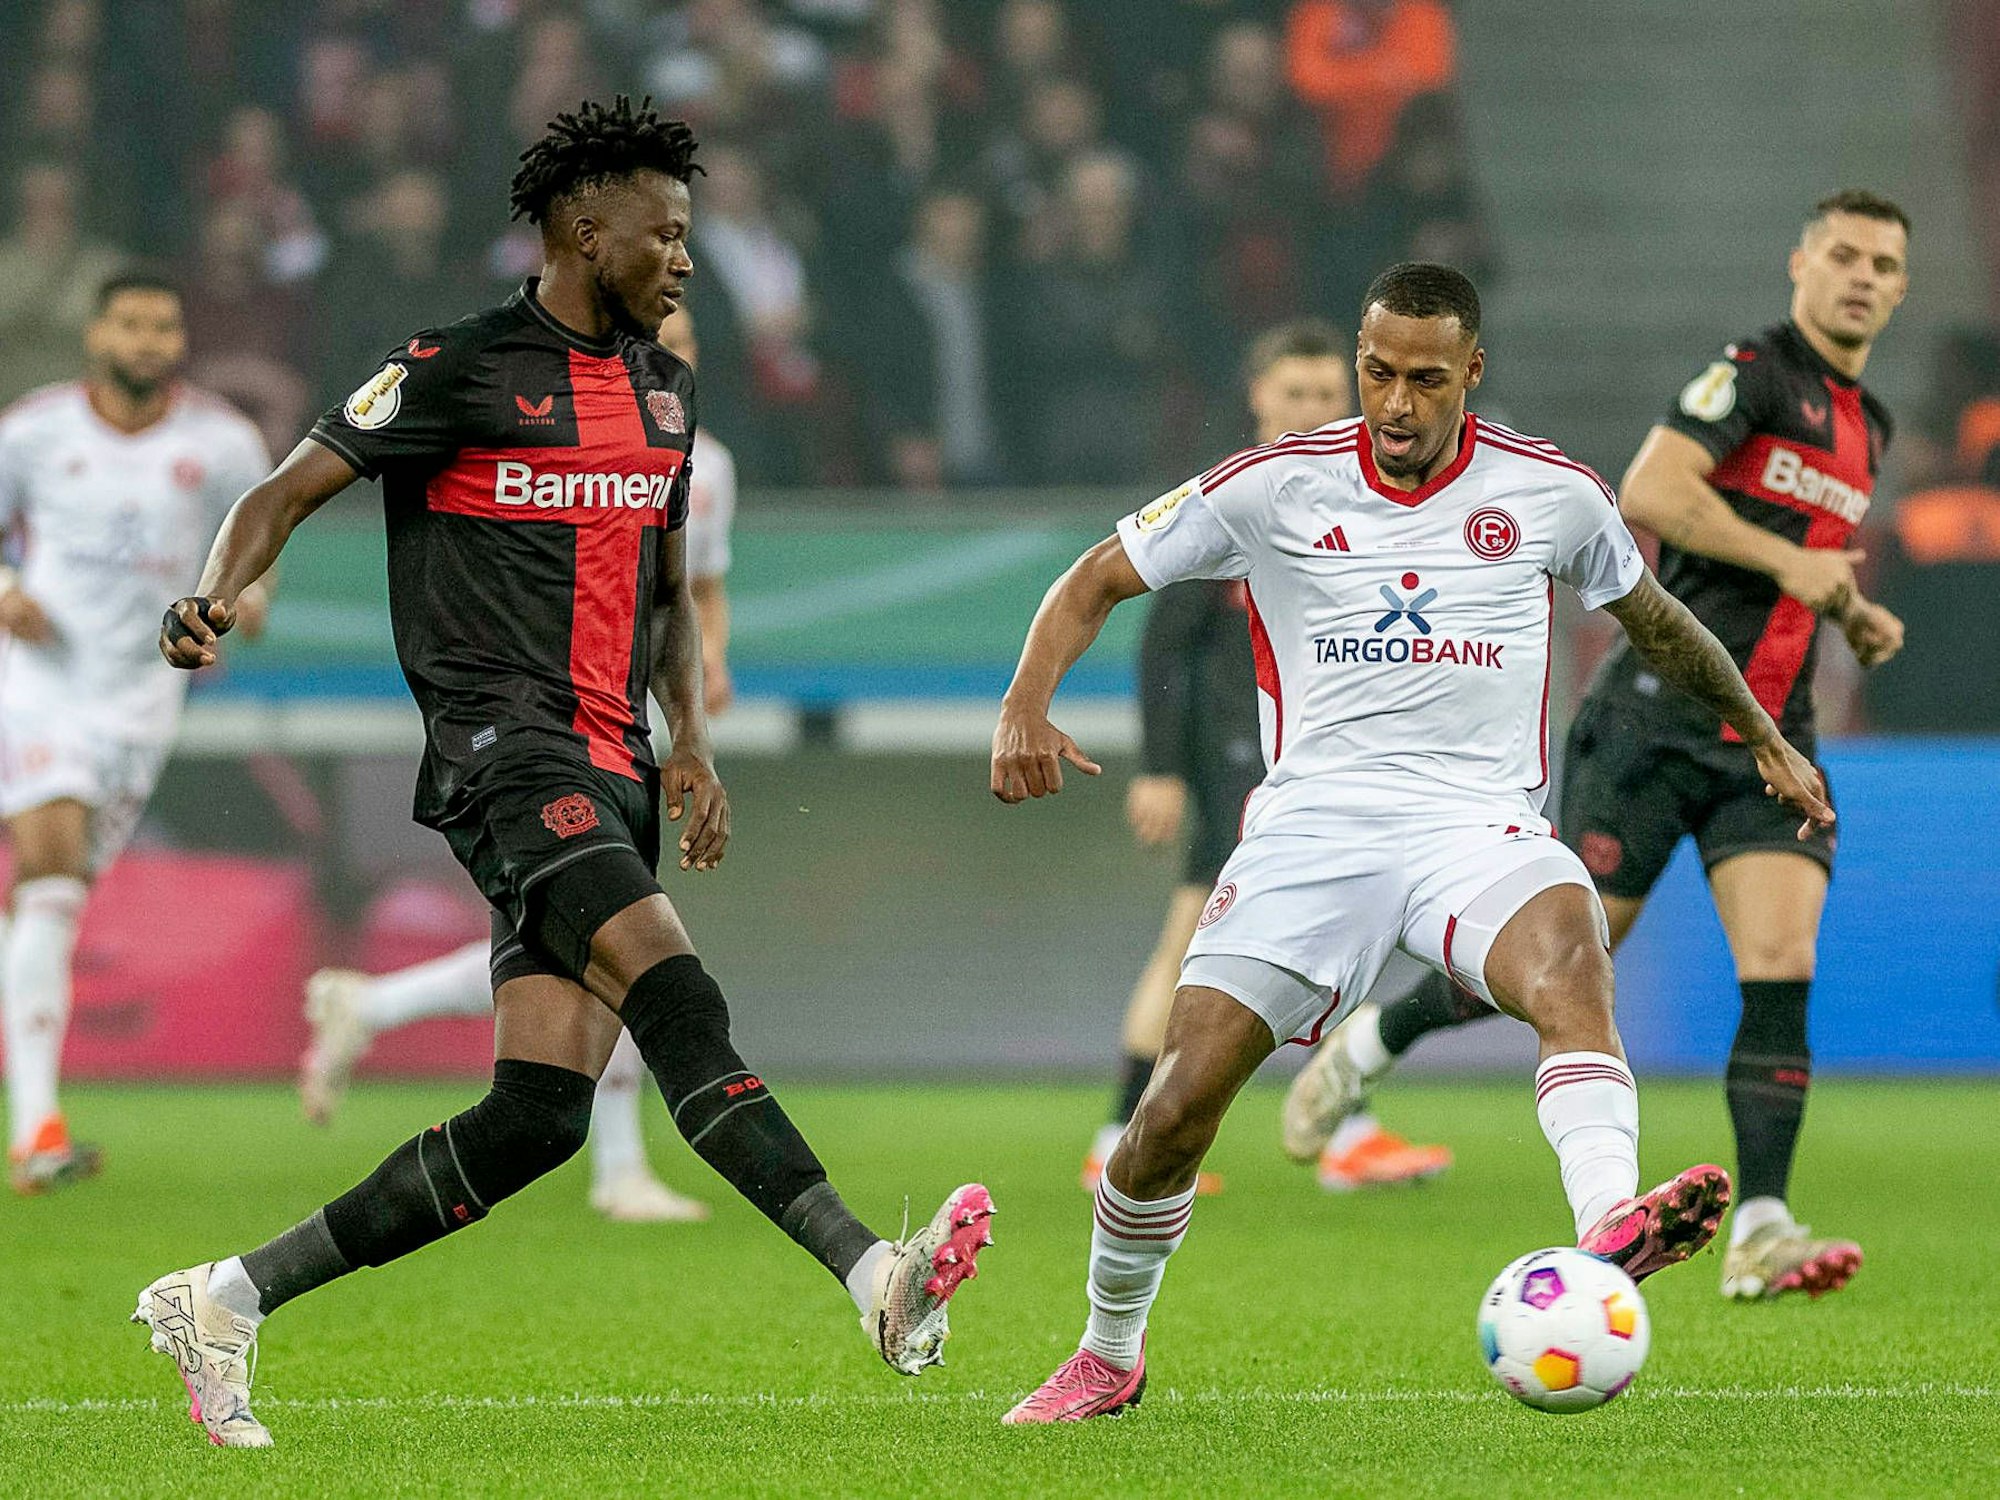 Leverkusens Edmond Tapsoba und Düsseldorfs Marlon Mustapha kämpfen um den Ball.